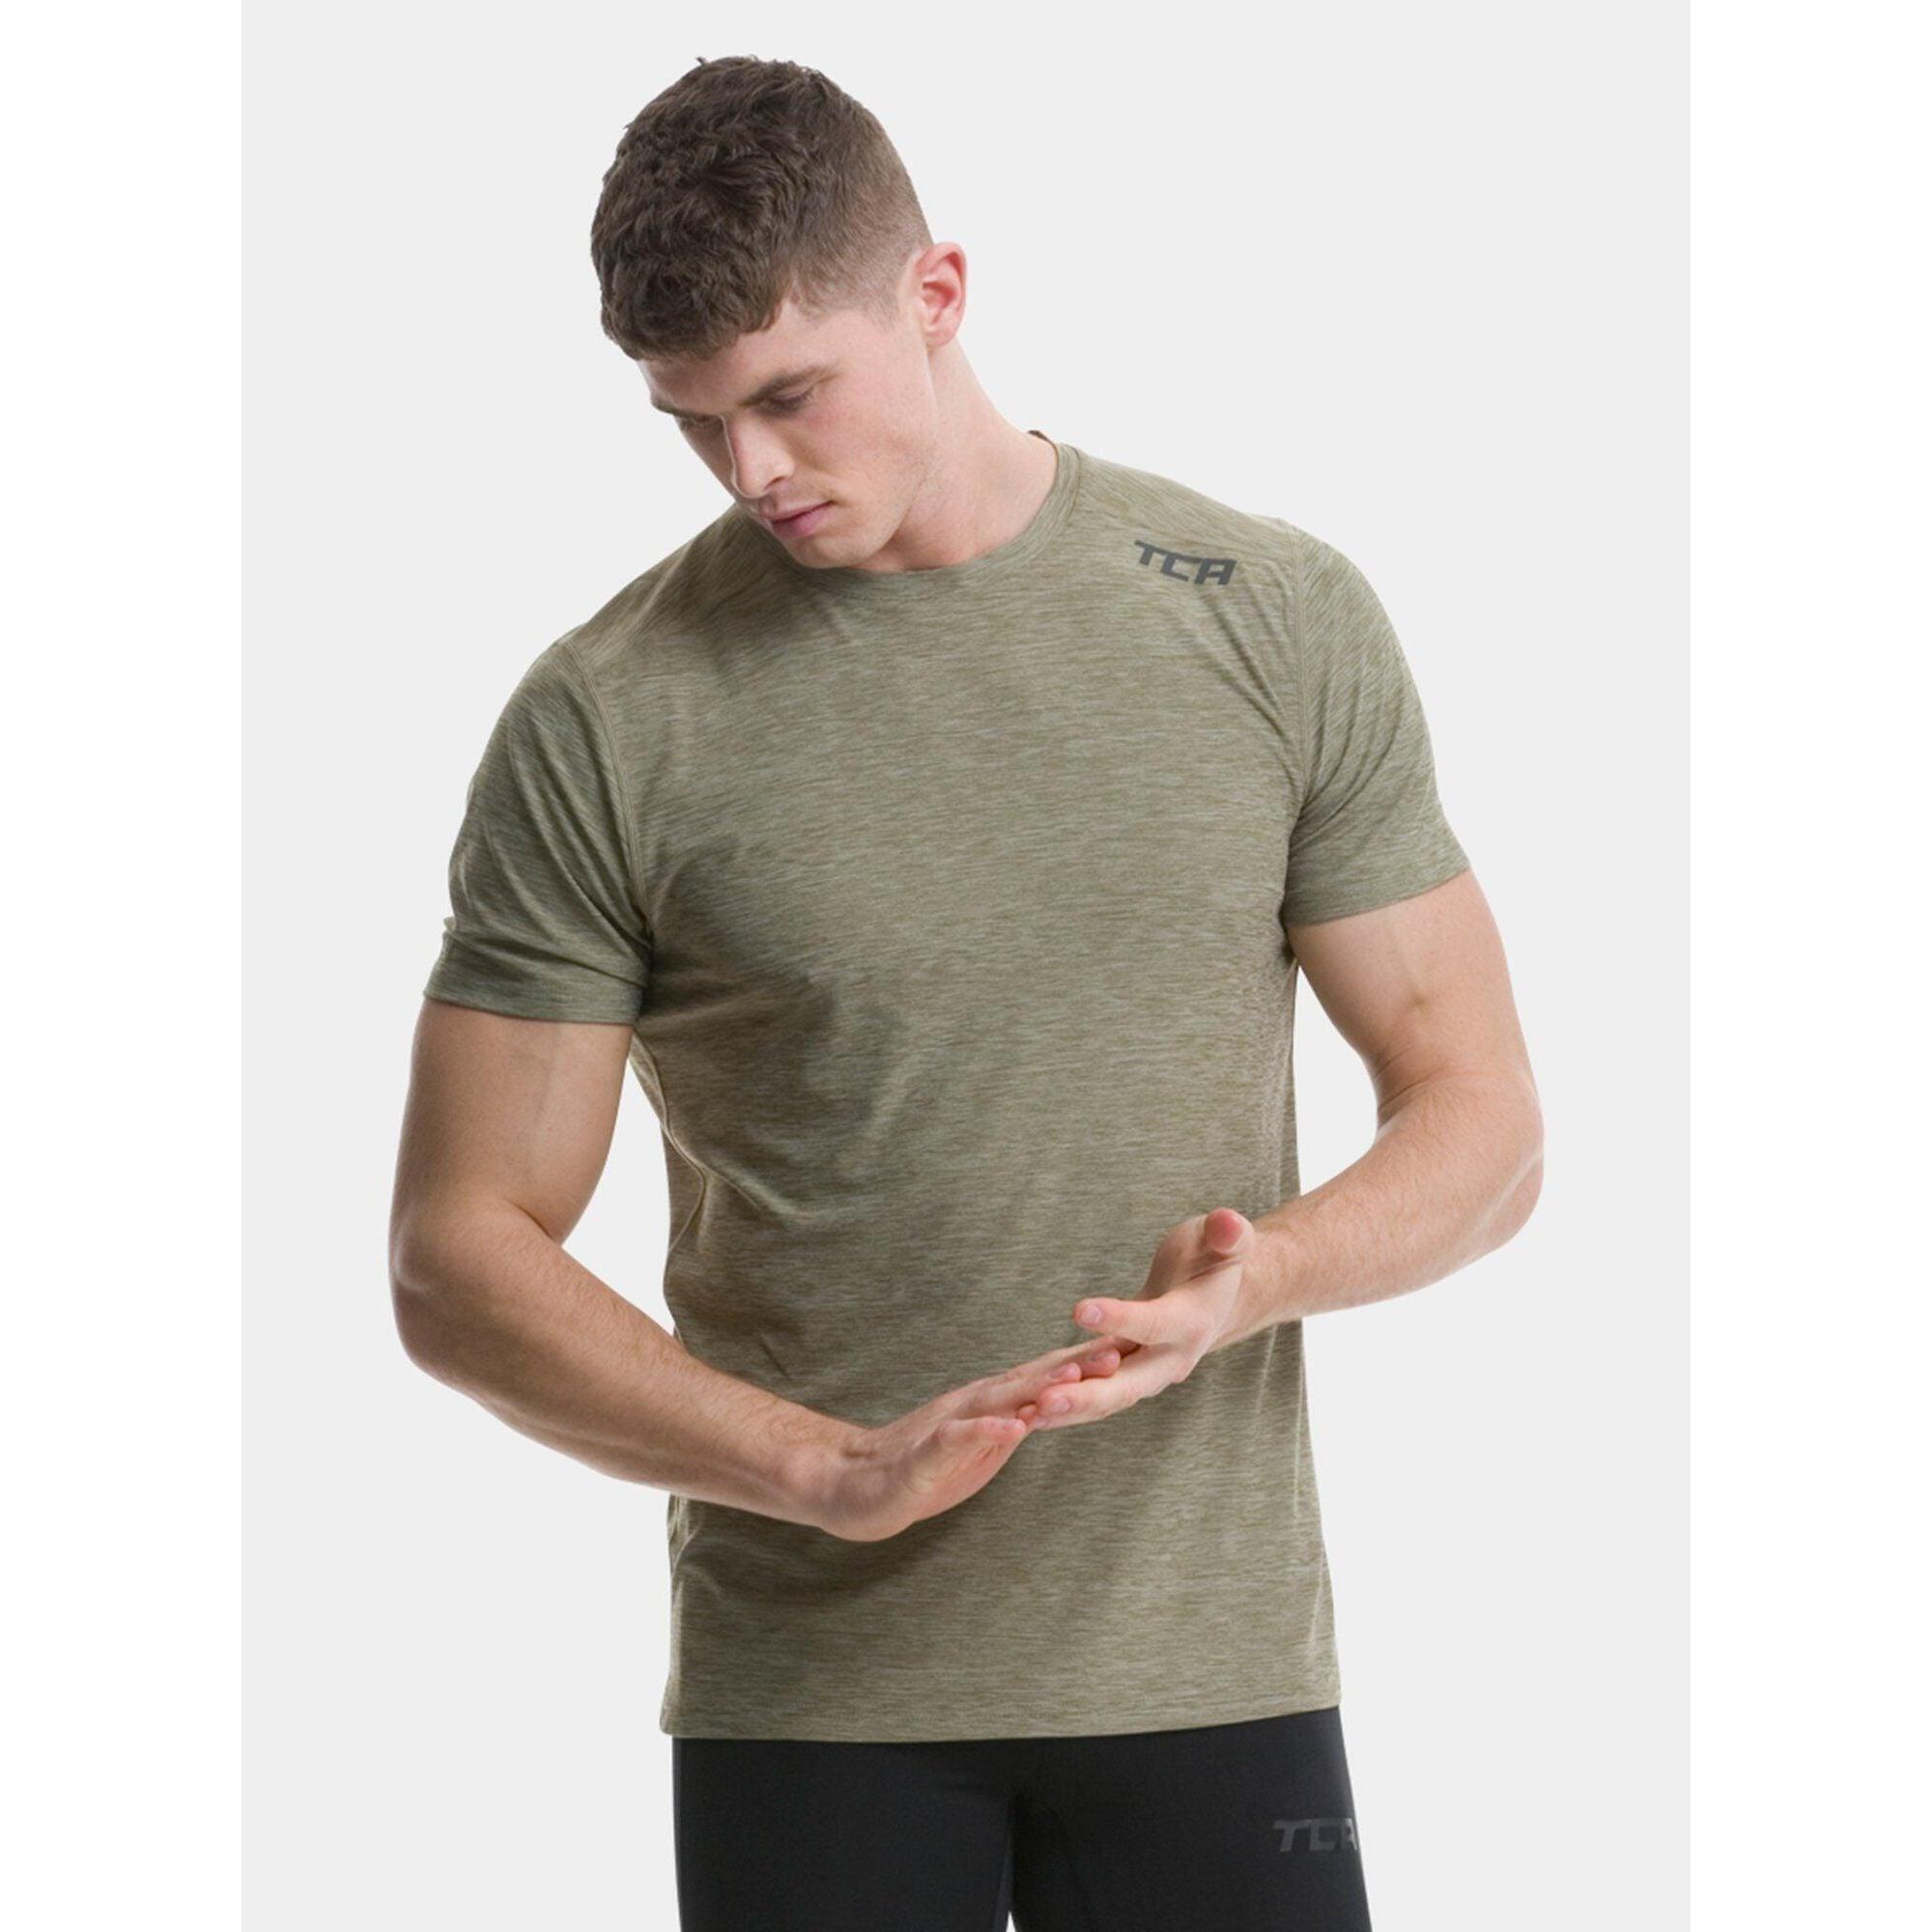 TCA Men’s Galaxy 4D-Stretch Running Gym T-Shirt - Khaki